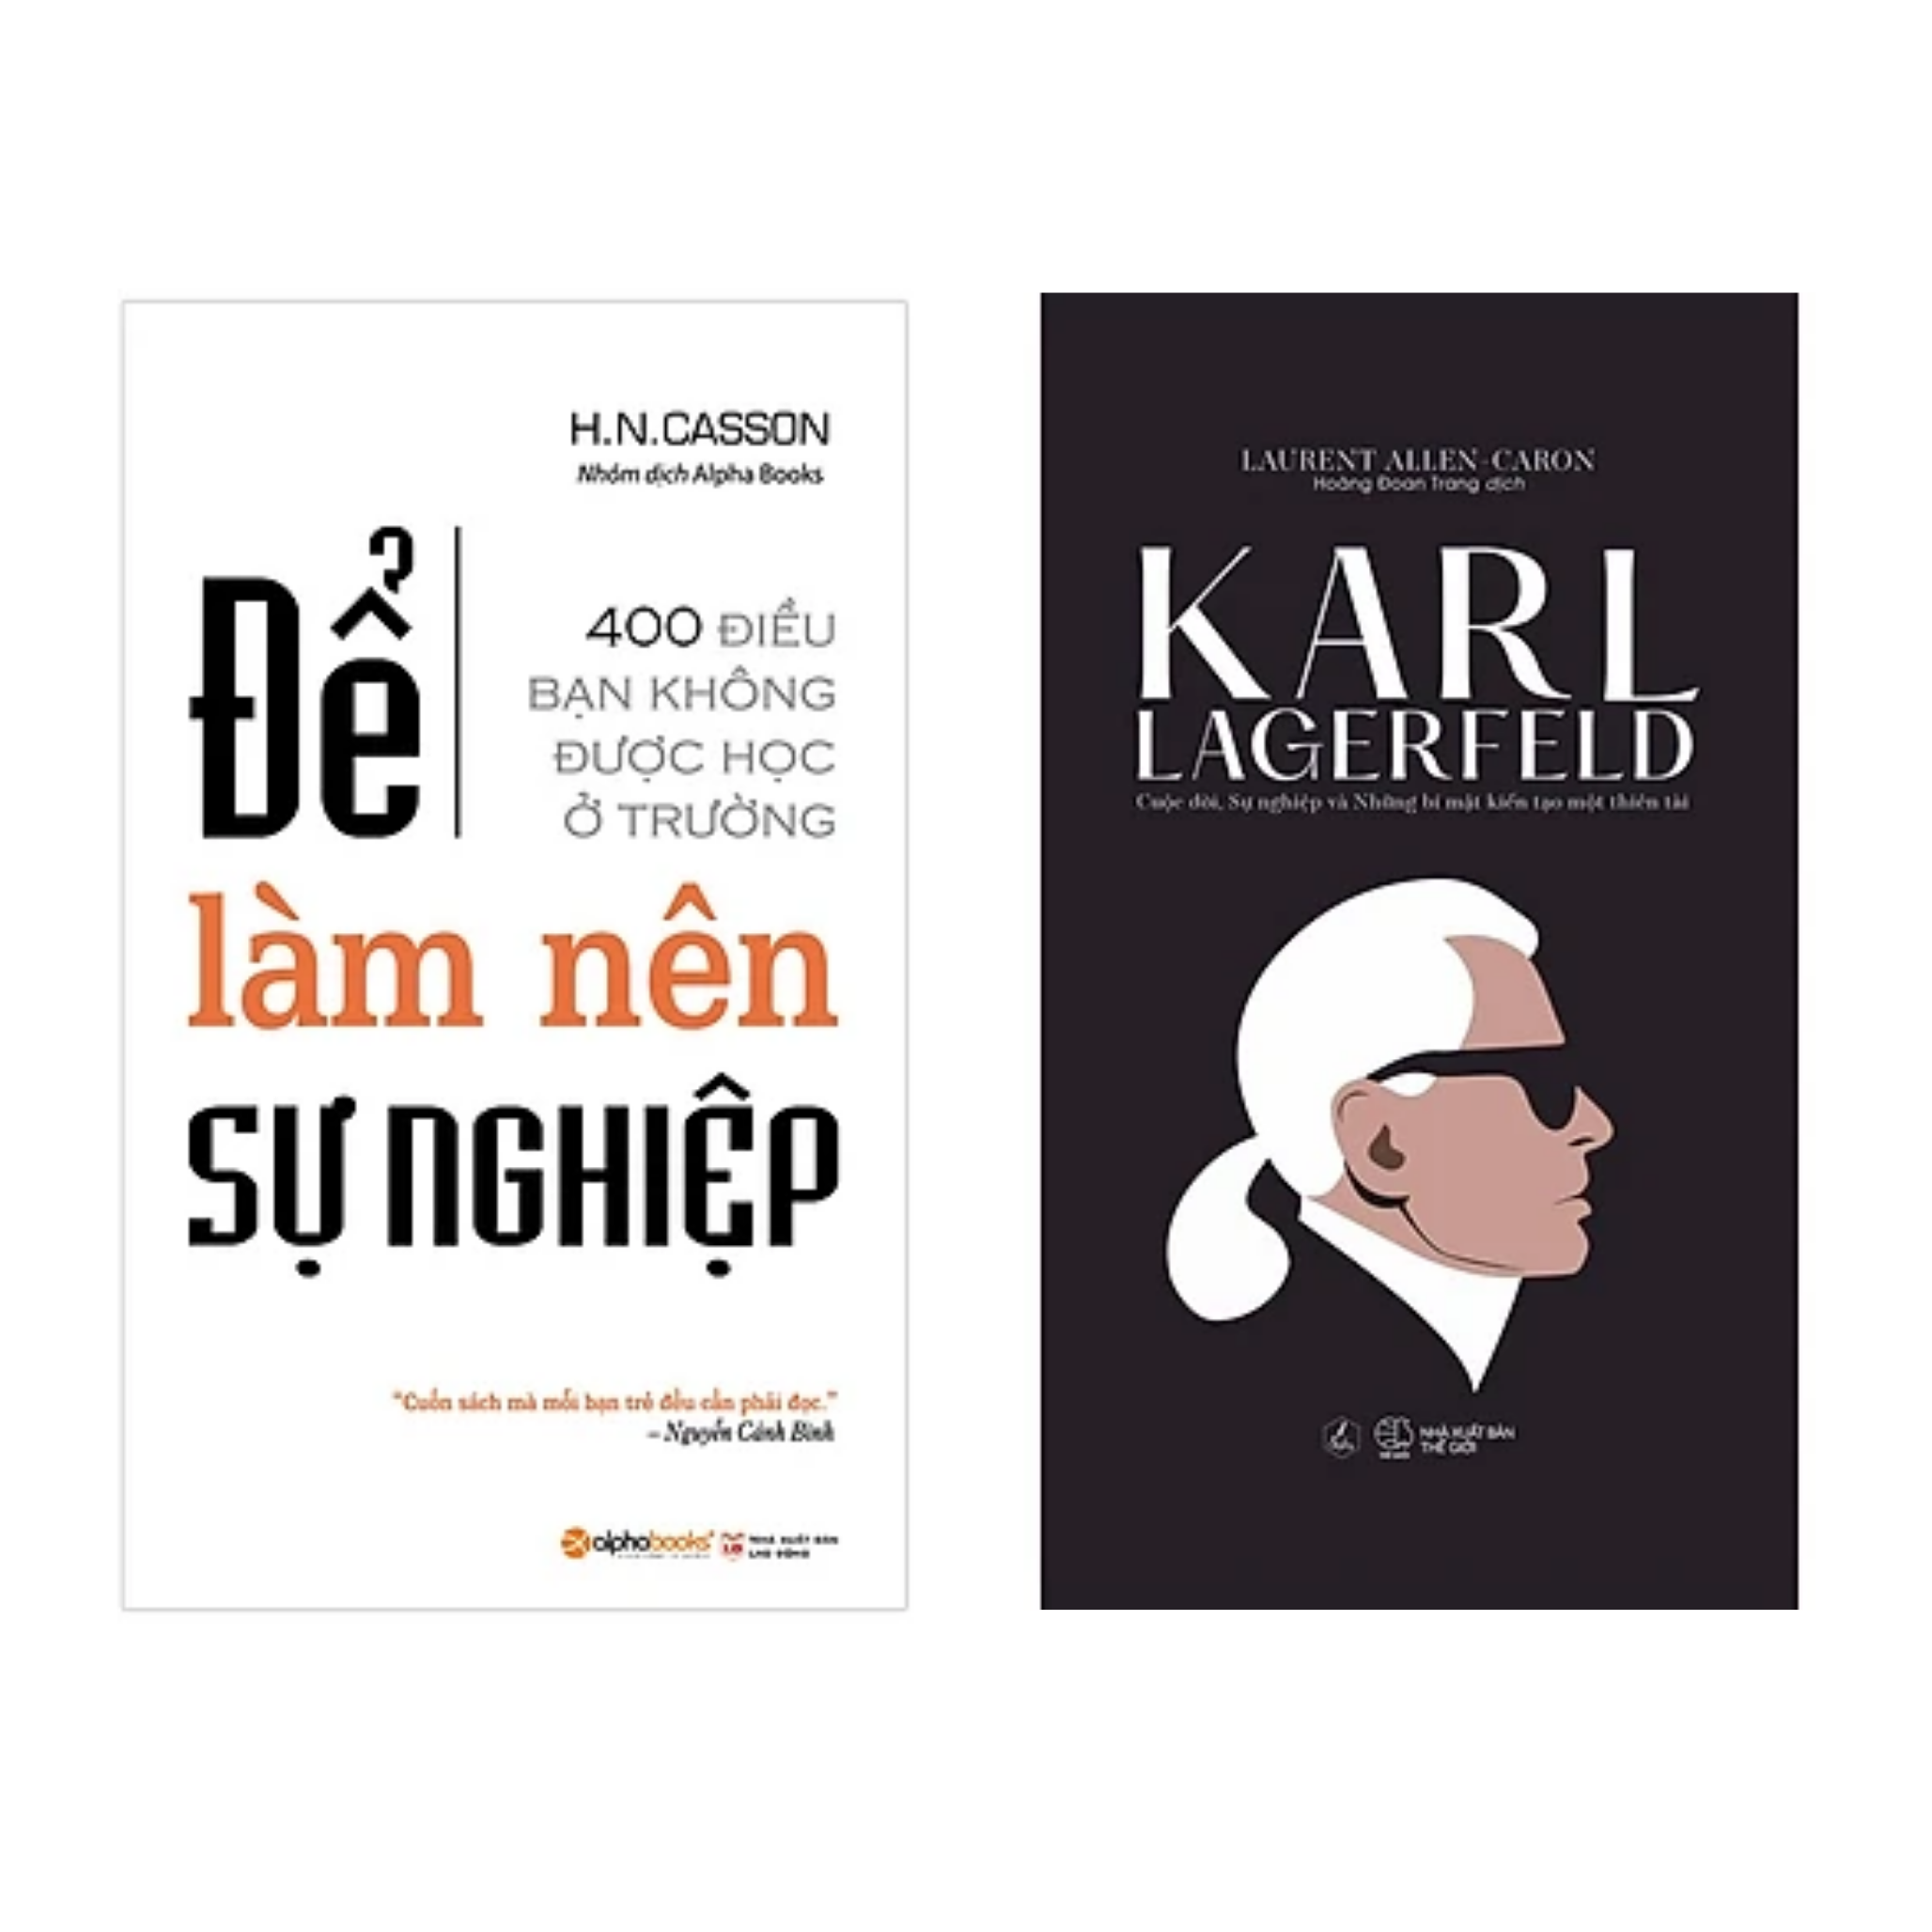 Combo 2 Cuốn Sách Kinh Doanh - Khởi Nghiệp: Để Làm Nên Sự Nghiệp (Tái Bản) + Karl Lagerfeld - Cuộc Đời, Sự Nghiệp Và Những Bí Mật Kiến Tạo Một Thiên Tài